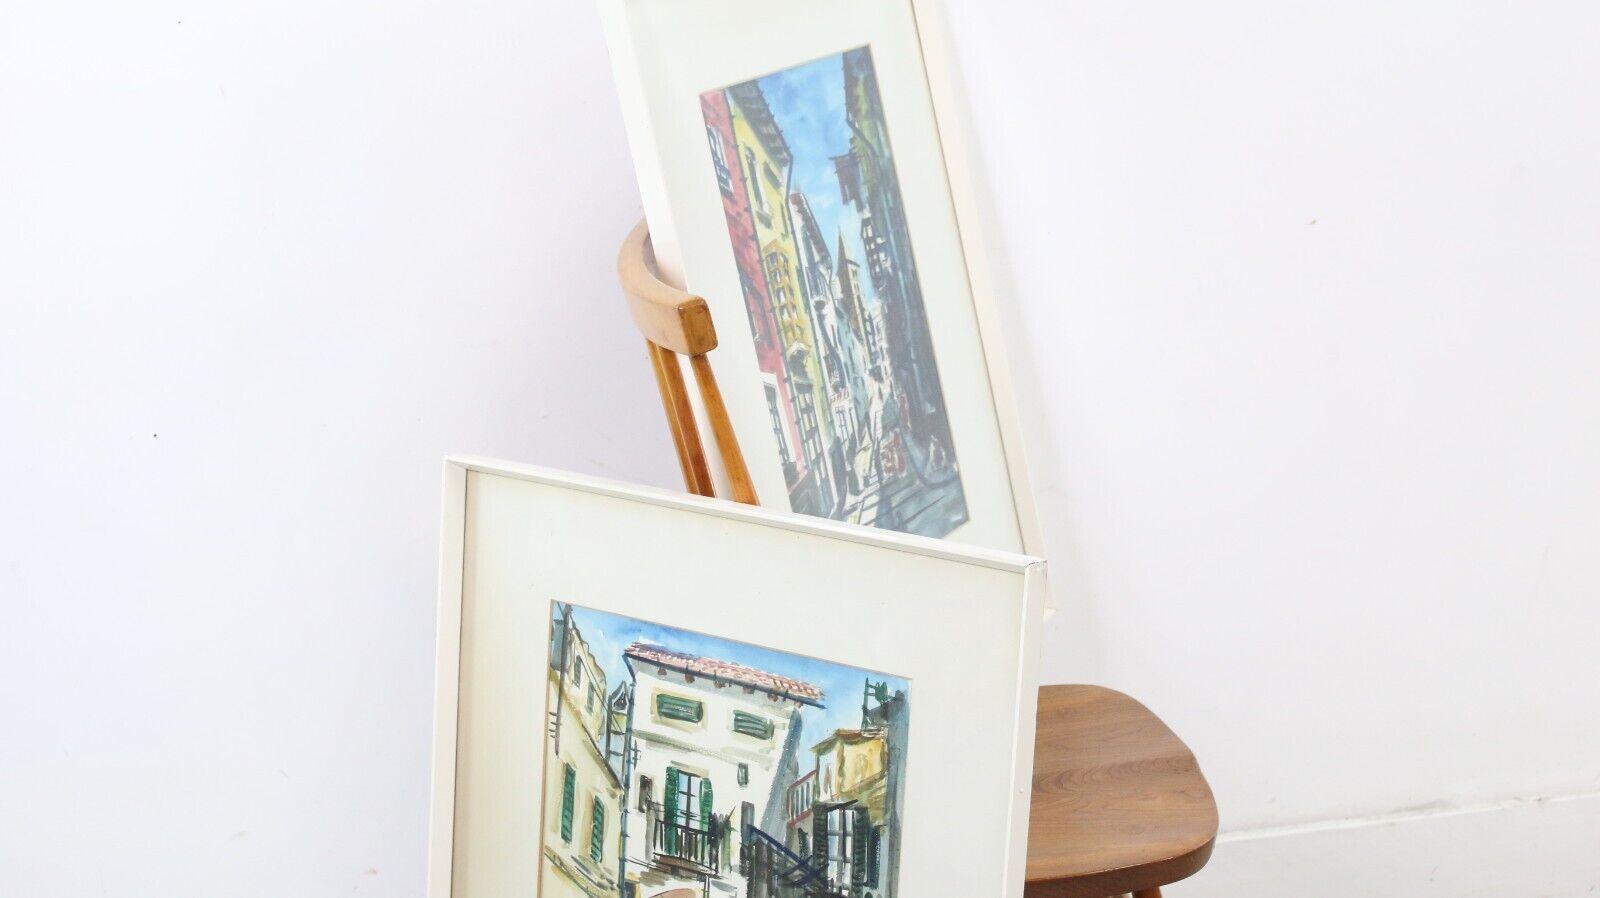 Peinture à l'aquarelle du milieu du siècle

Deux aquarelles originales du milieu des années 1960, encadrées et colorées, dont l'une représente une scène de rue d'un village espagnol.

Signé par l'artiste.

Dimensions (cm) : 

77H x 58W x 3D
73H x